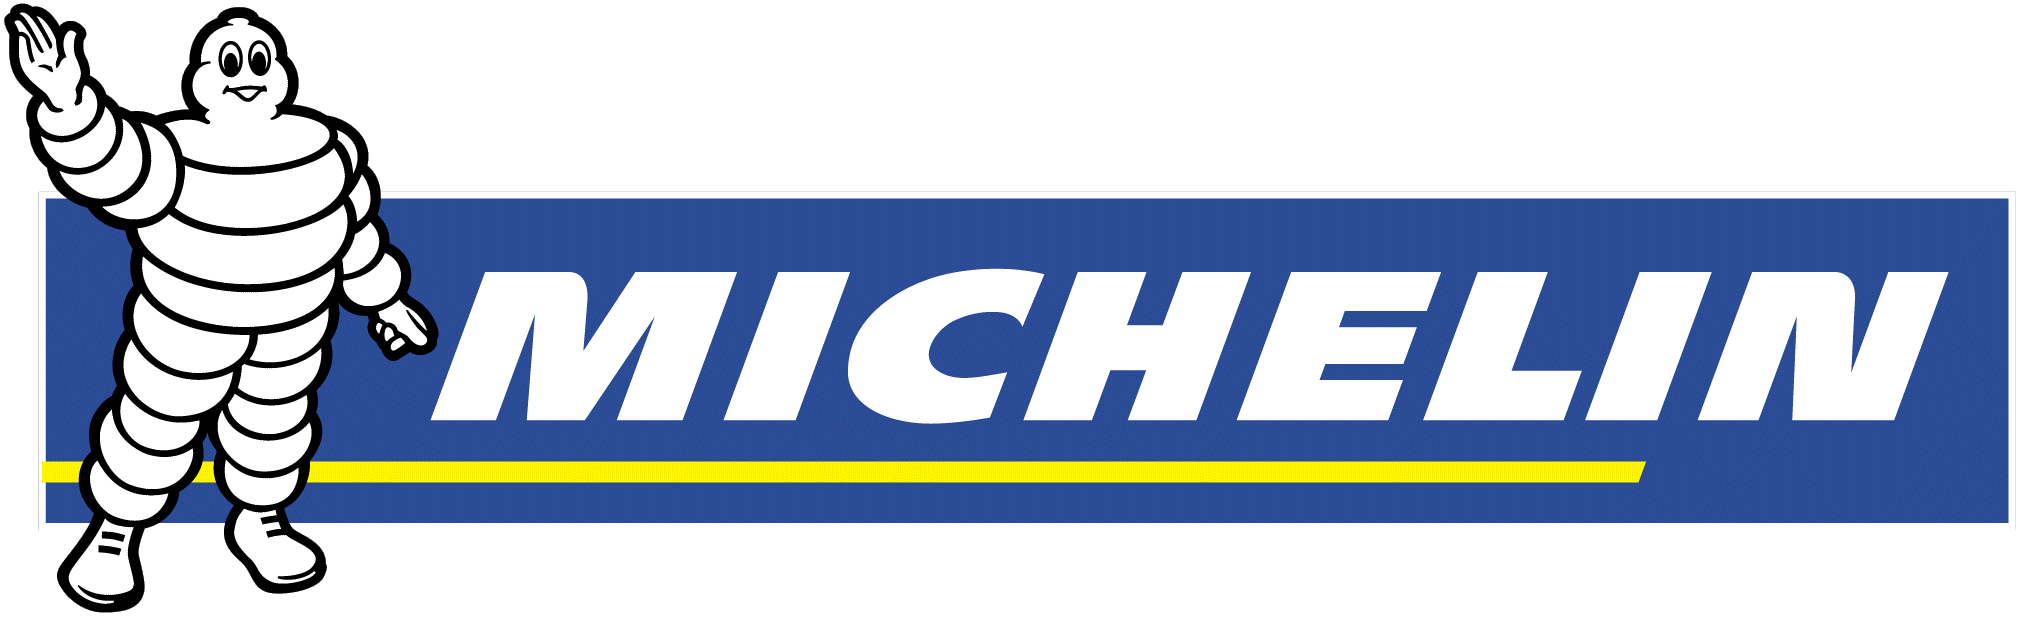 Opony rowerowe Michelin - w sklepie RoweryStylowe.pl